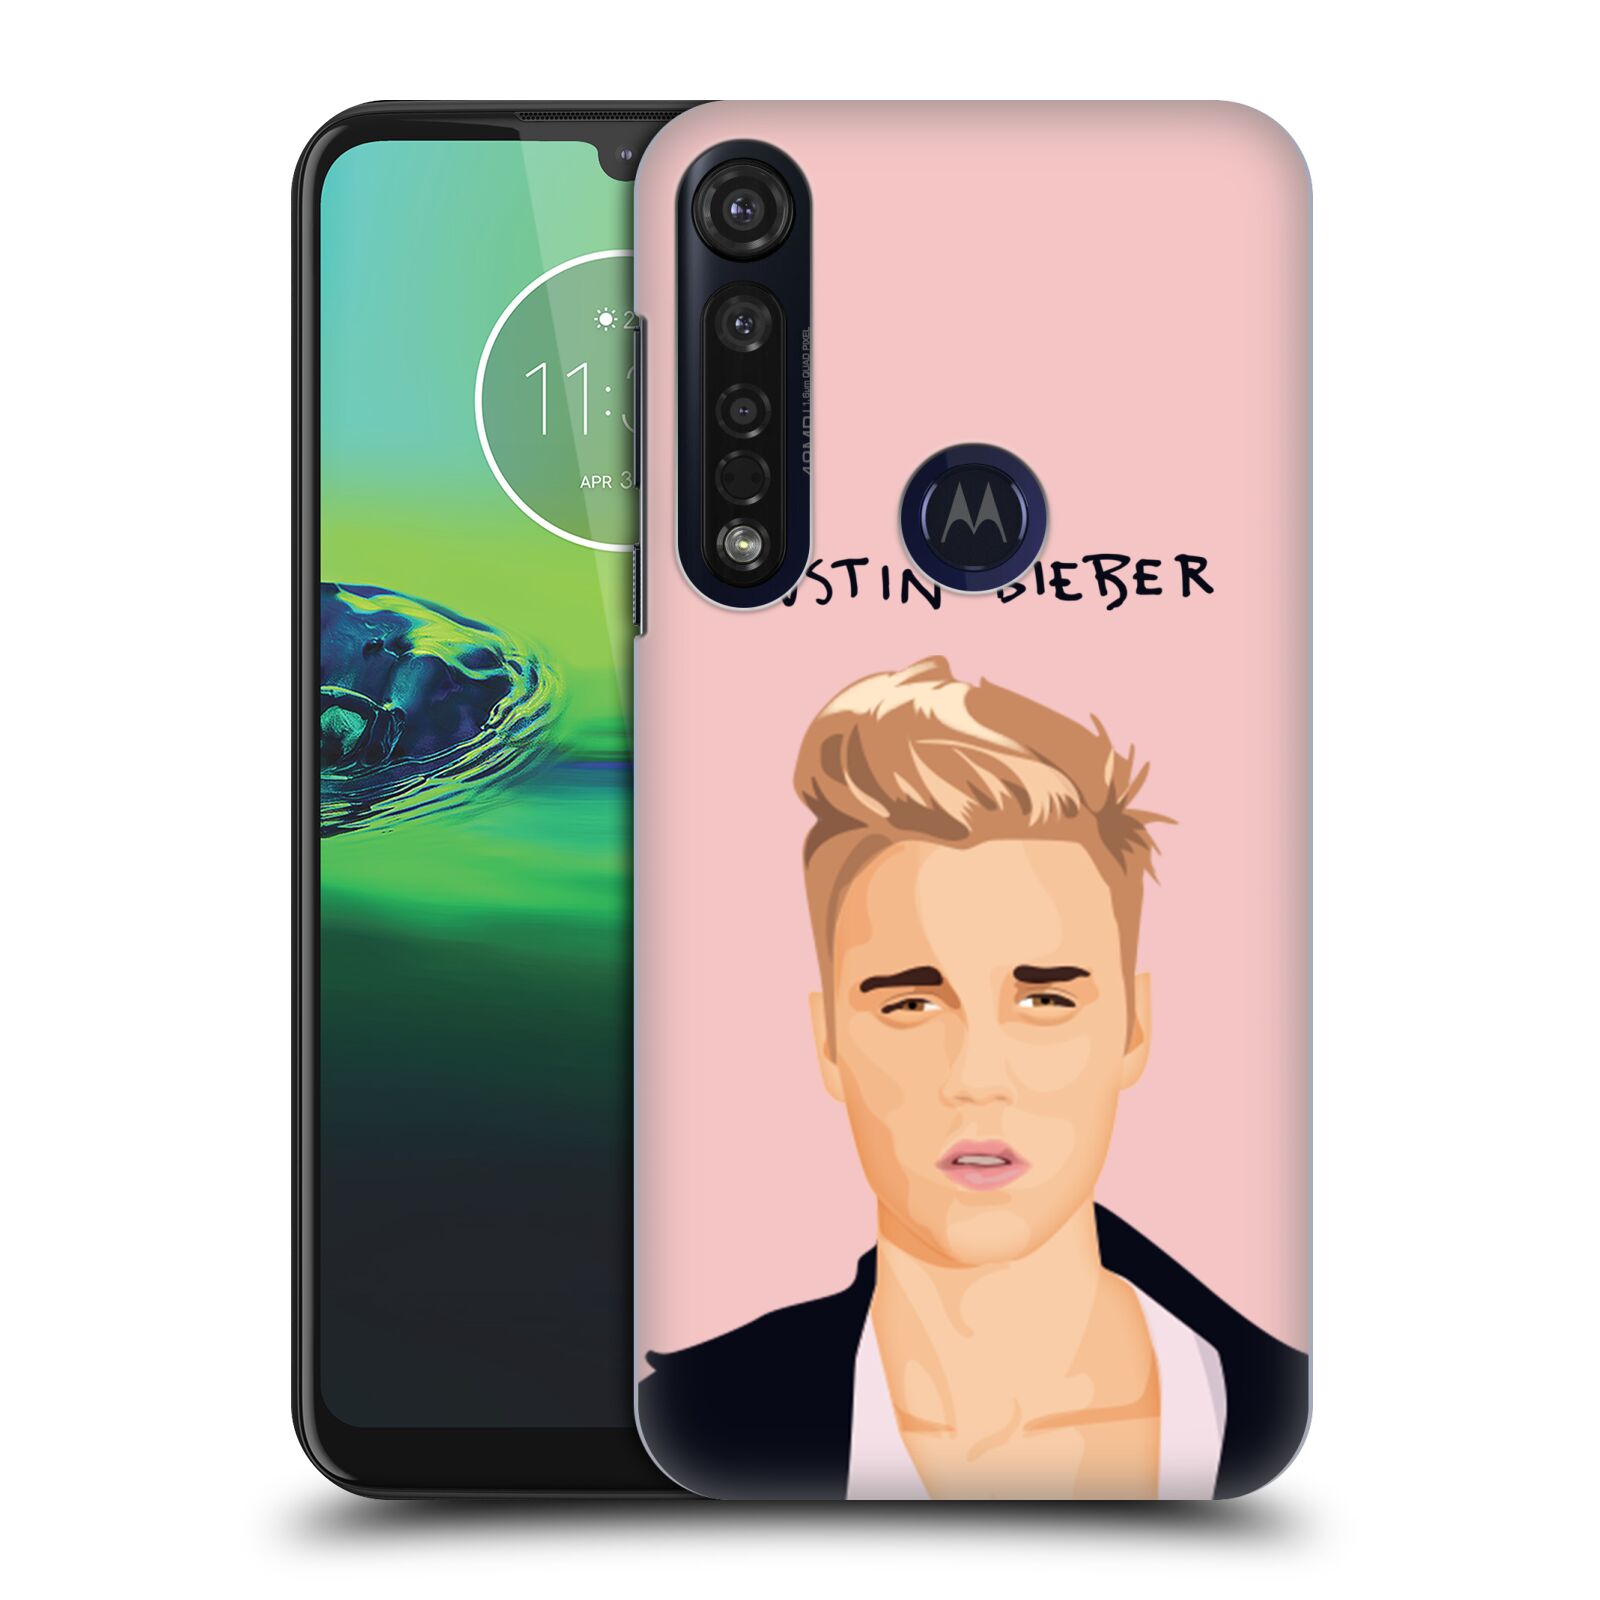 Pouzdro na mobil Motorola Moto G8 PLUS - HEAD CASE - Justin Bieber kreslená tvář růžové pozadí